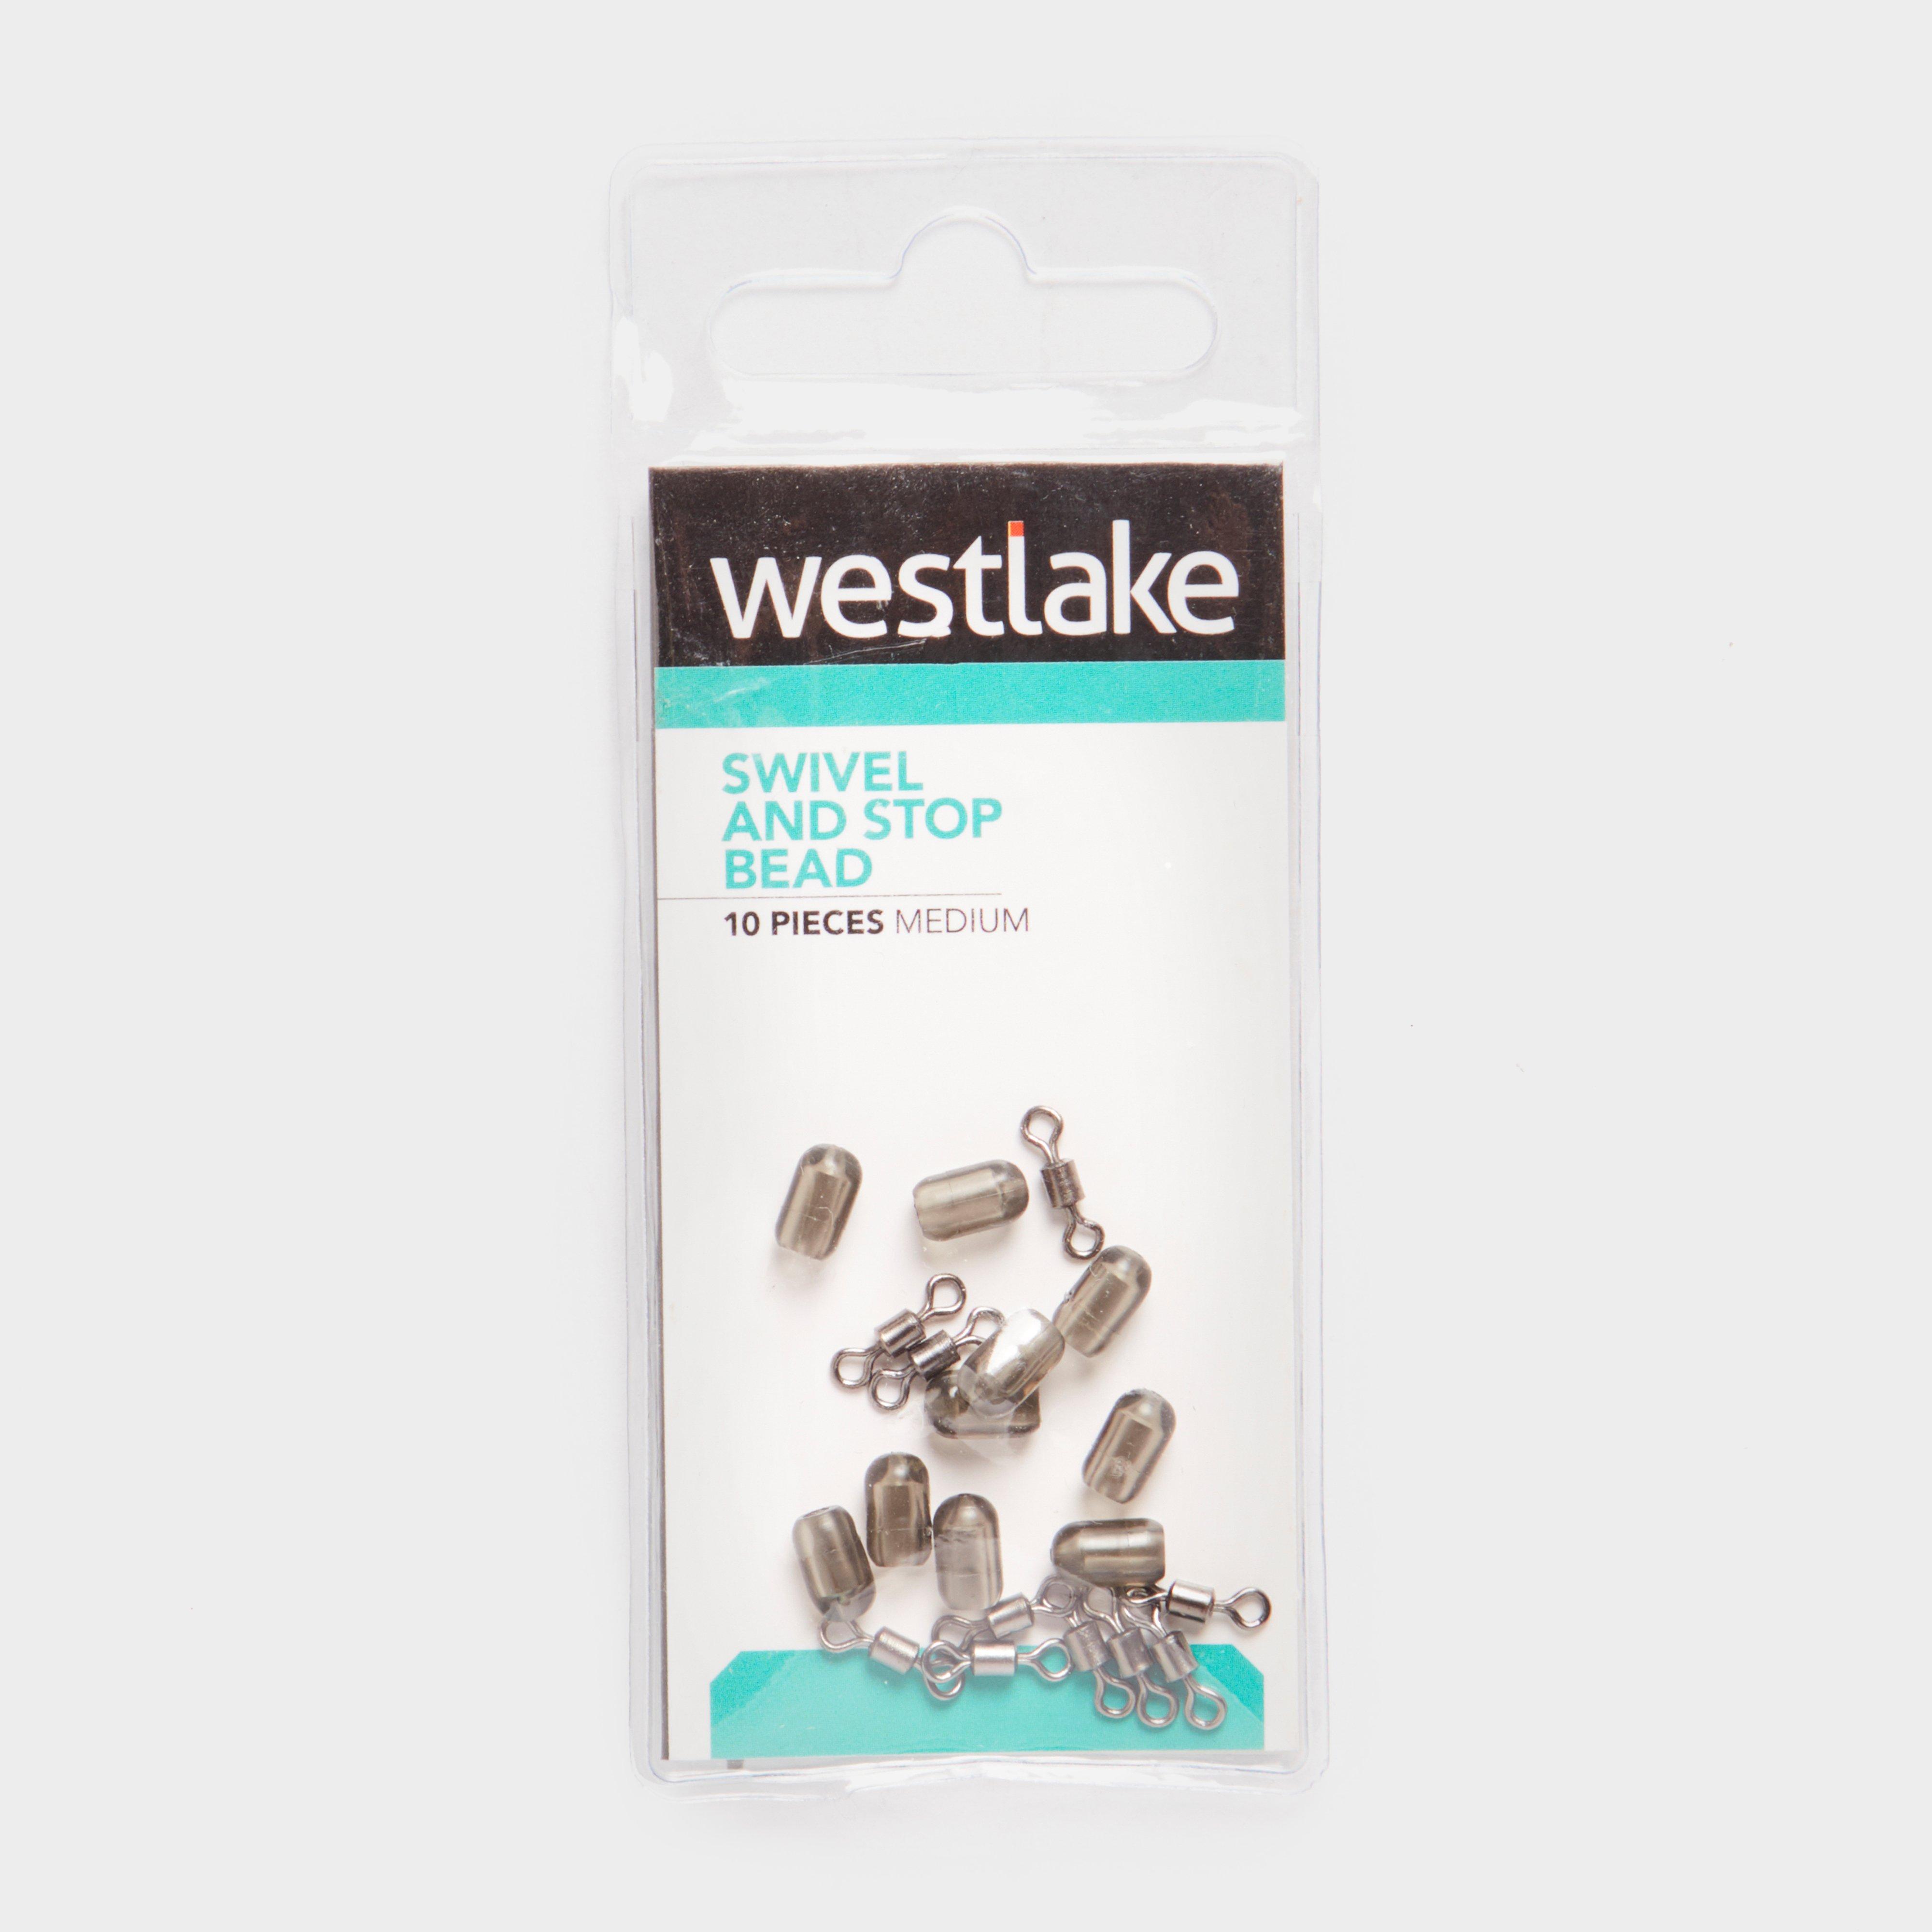 Westlake Method Beads 6 Pc Review